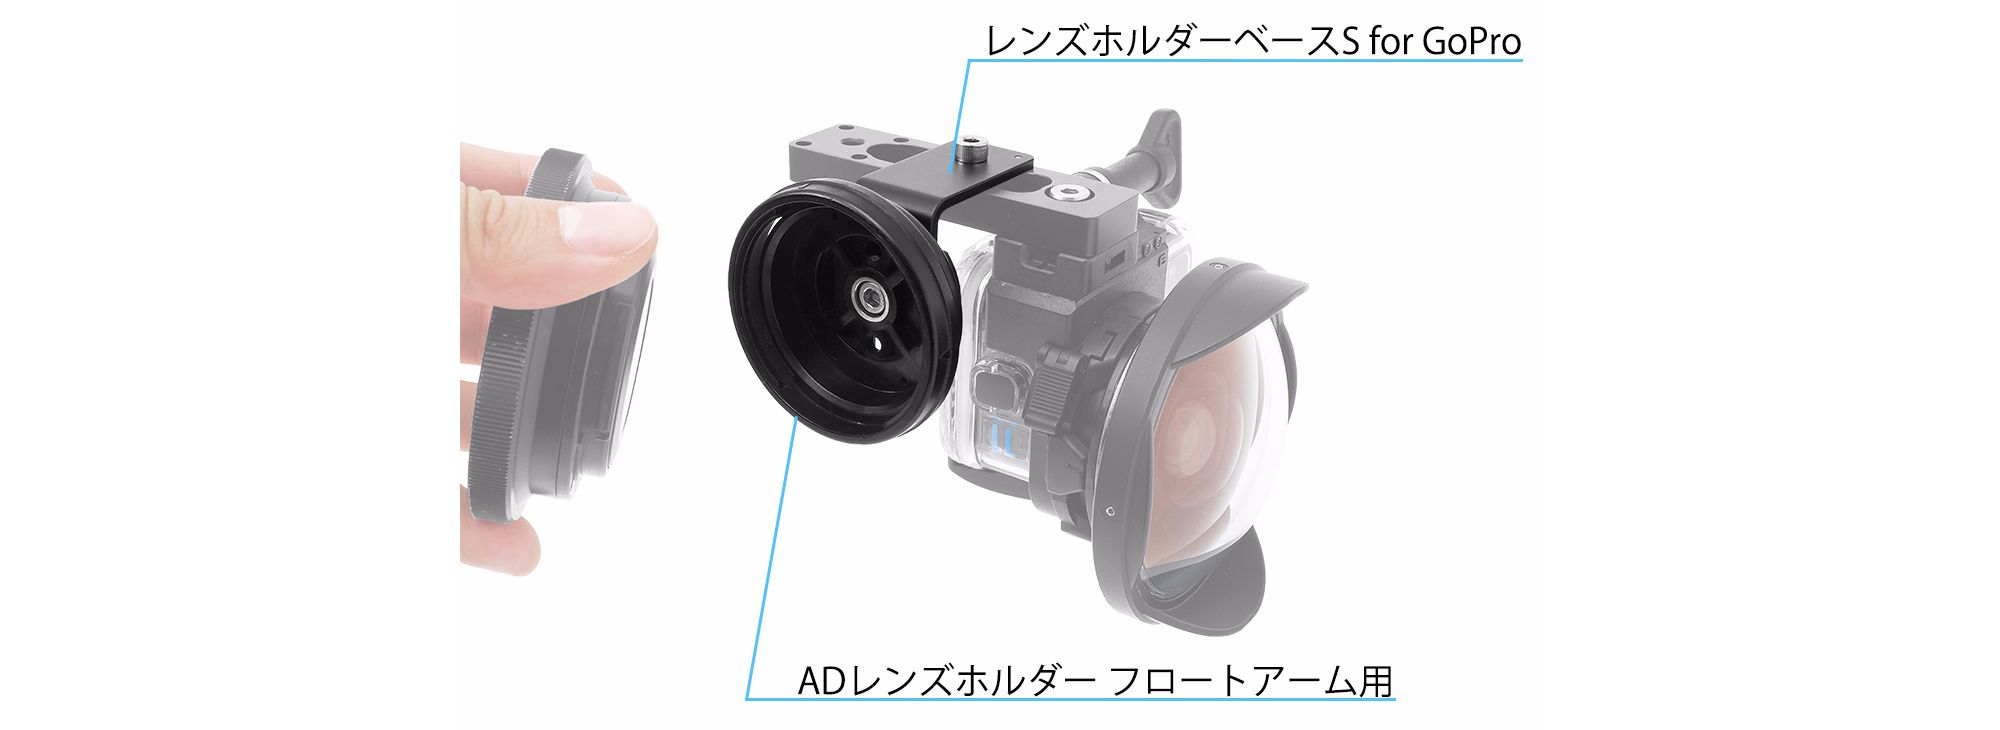 ライトアダプター for GoPro』の発売について of INON_japan